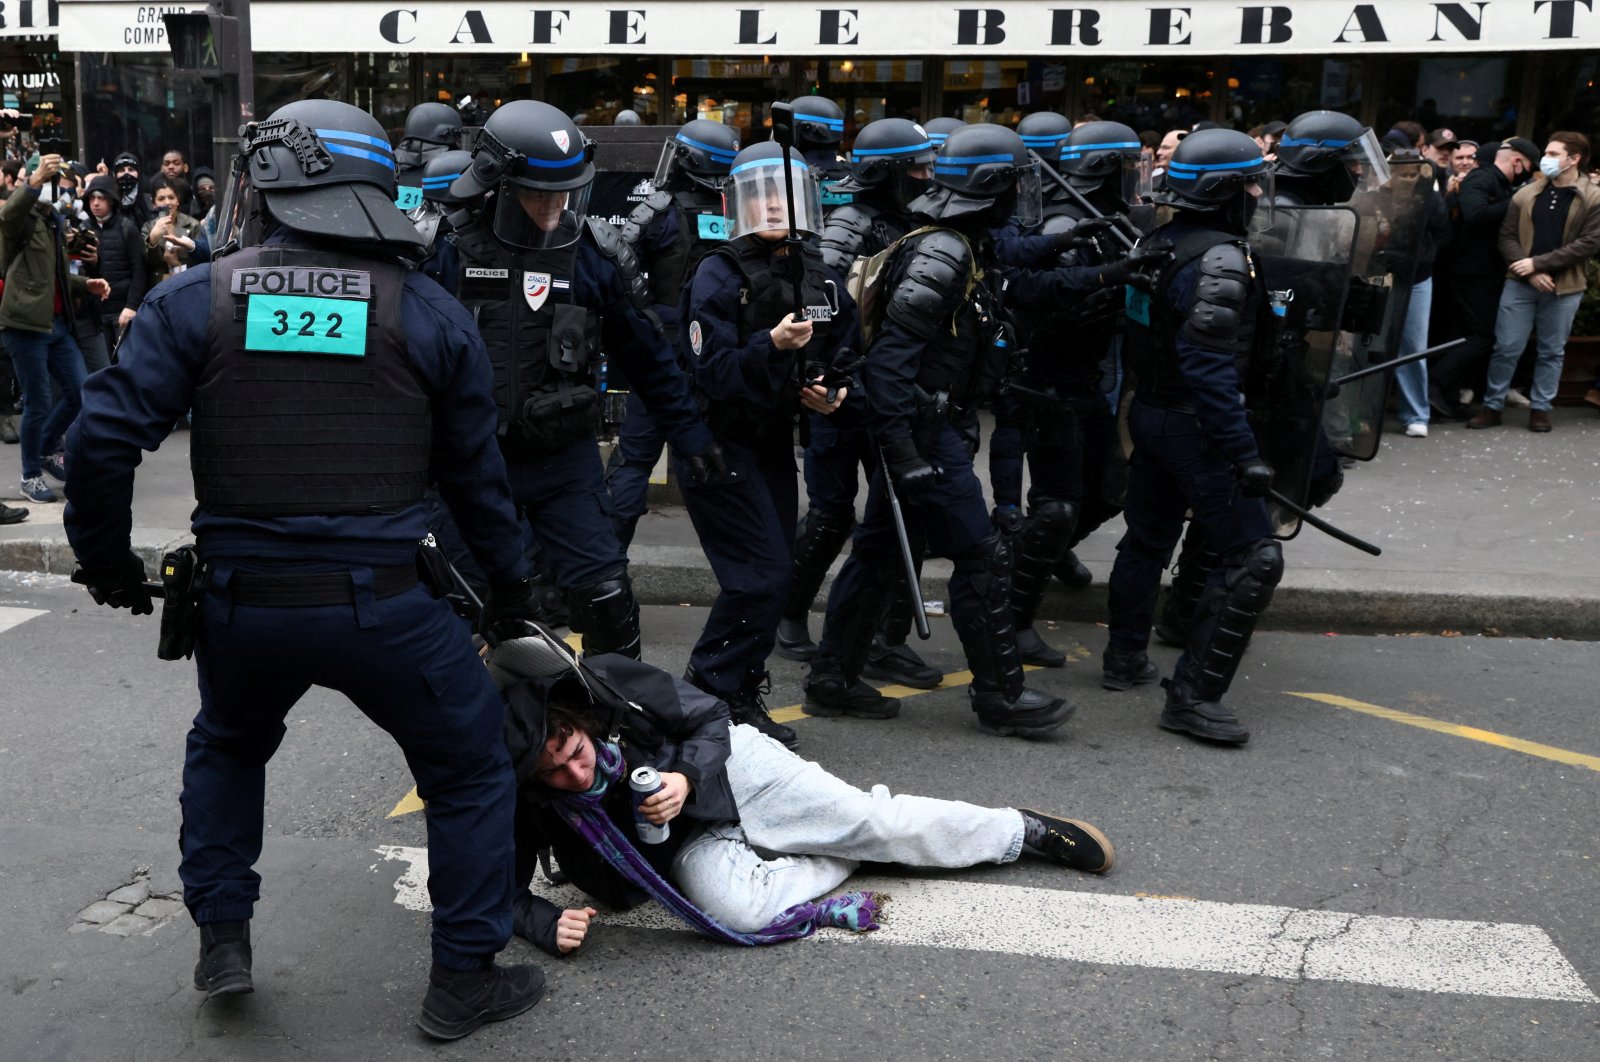 CoE, pengawas lainnya mengecam polisi Prancis karena kekuatan yang berlebihan